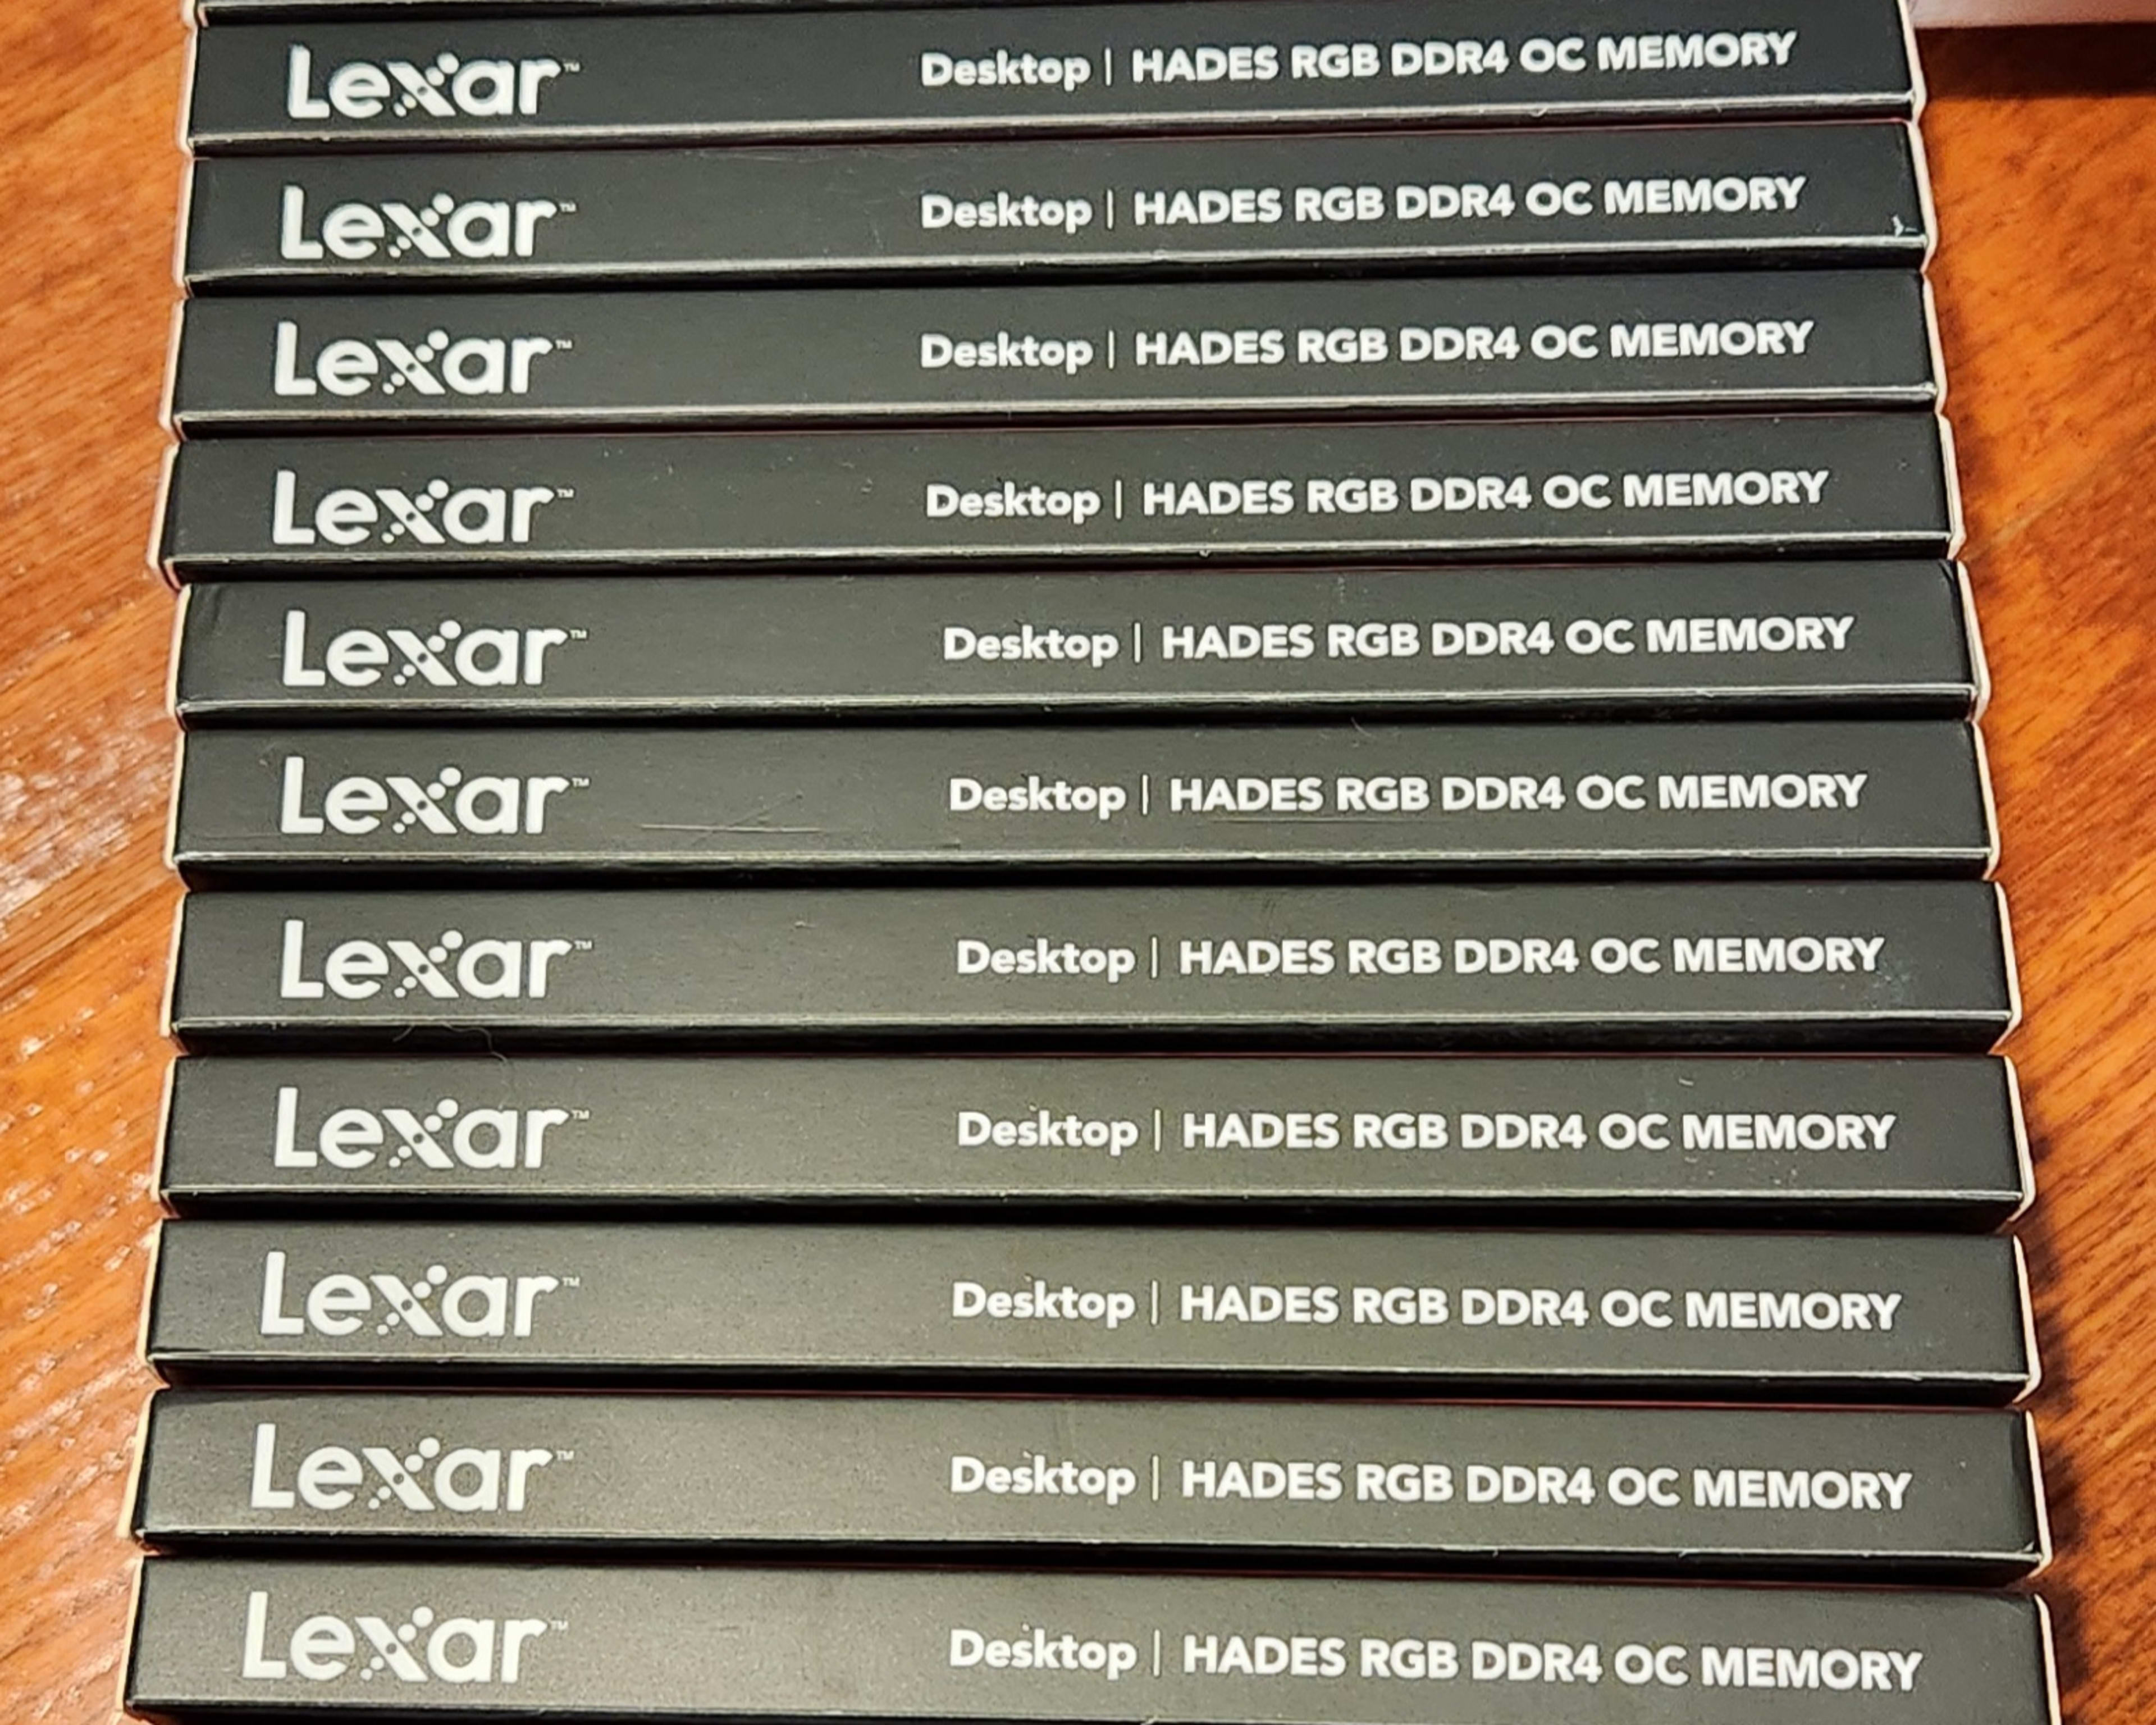 FOUR KITS - 2x8GB DDR4 @ 3600C18 (Lexar Hades RGB) - BNIB